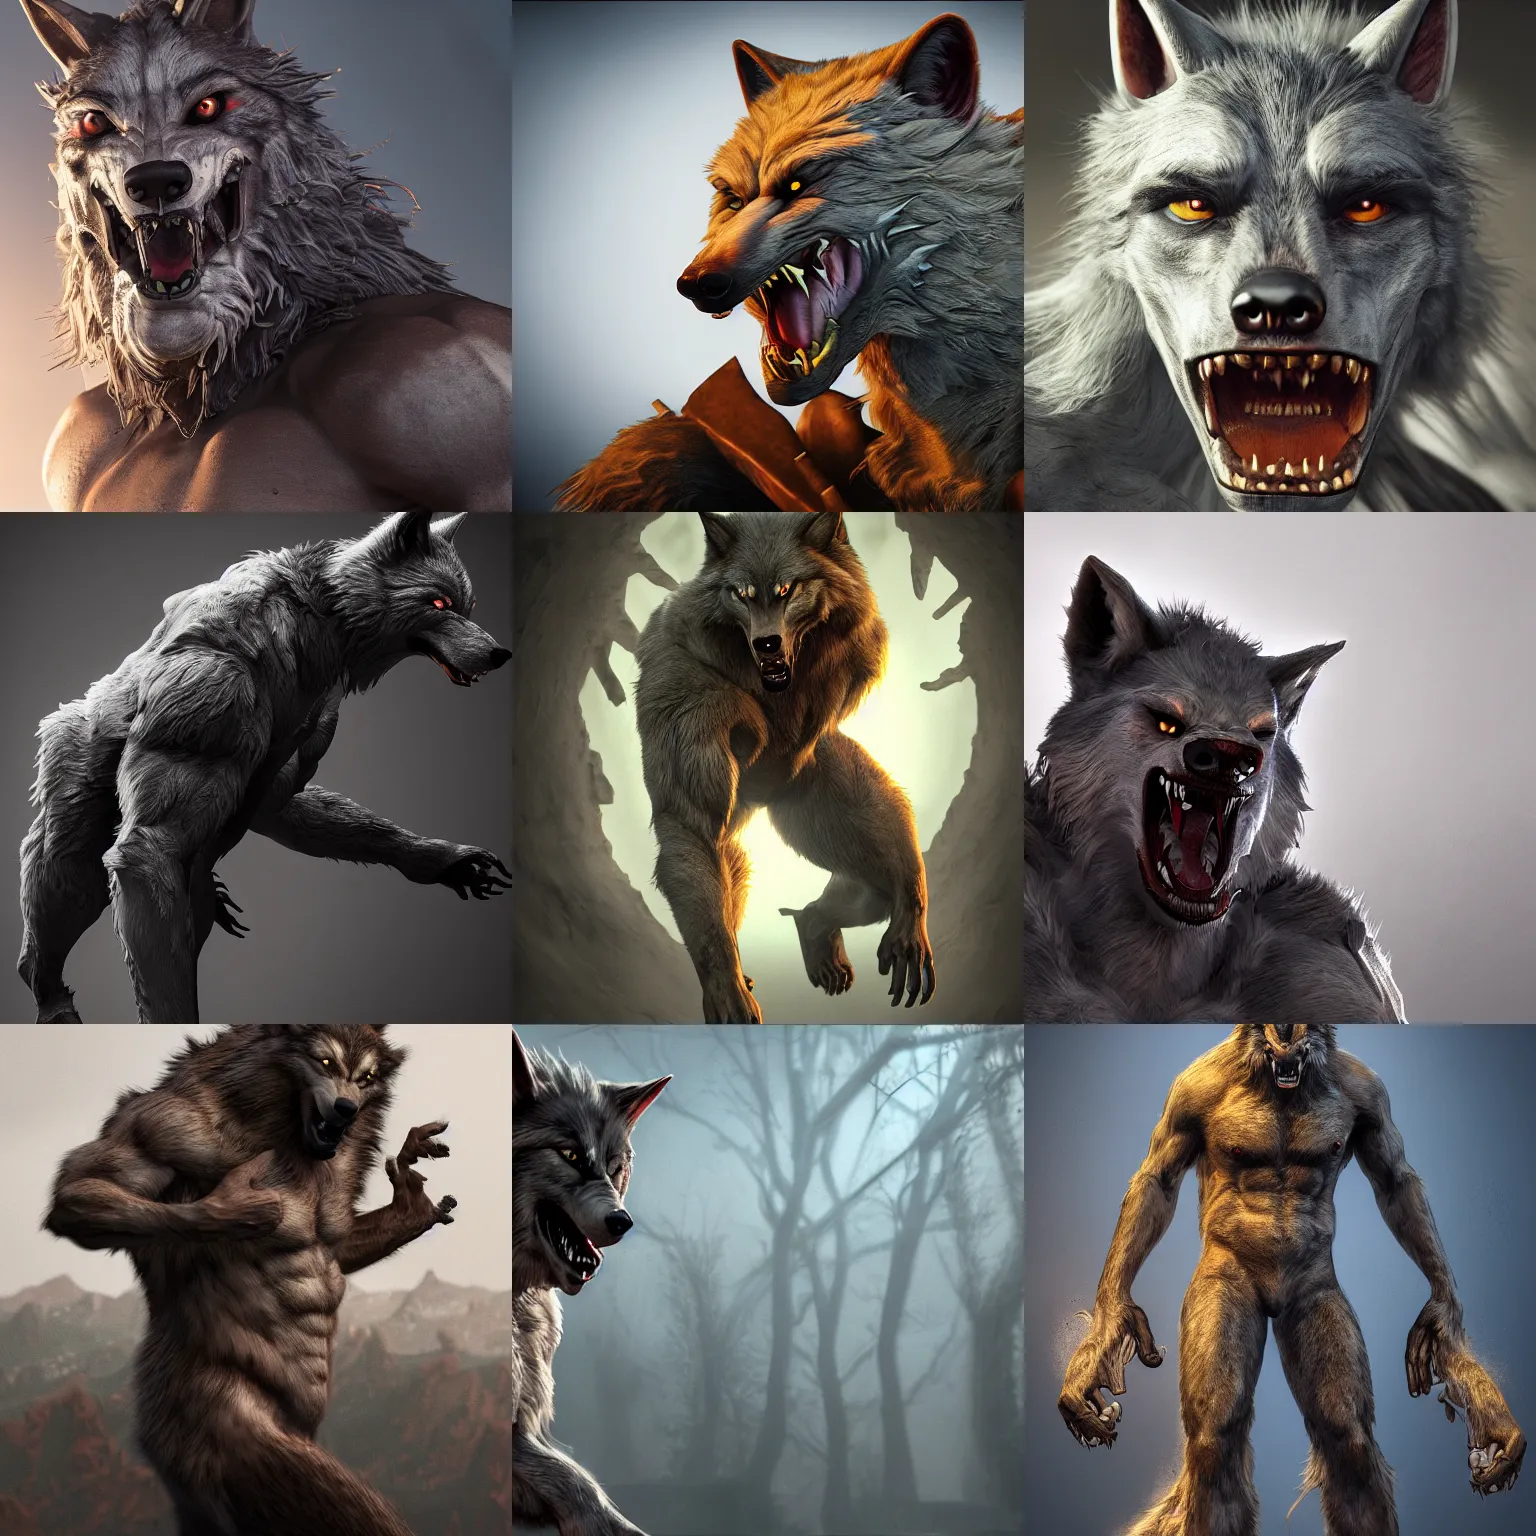 Prompt: Werewolf, high detail, ultra fantasy realism, high modernization, myths and legends, top level rendering, dynamic lighting, high saturation, cinematic, artstation, octane Render Substance Designer